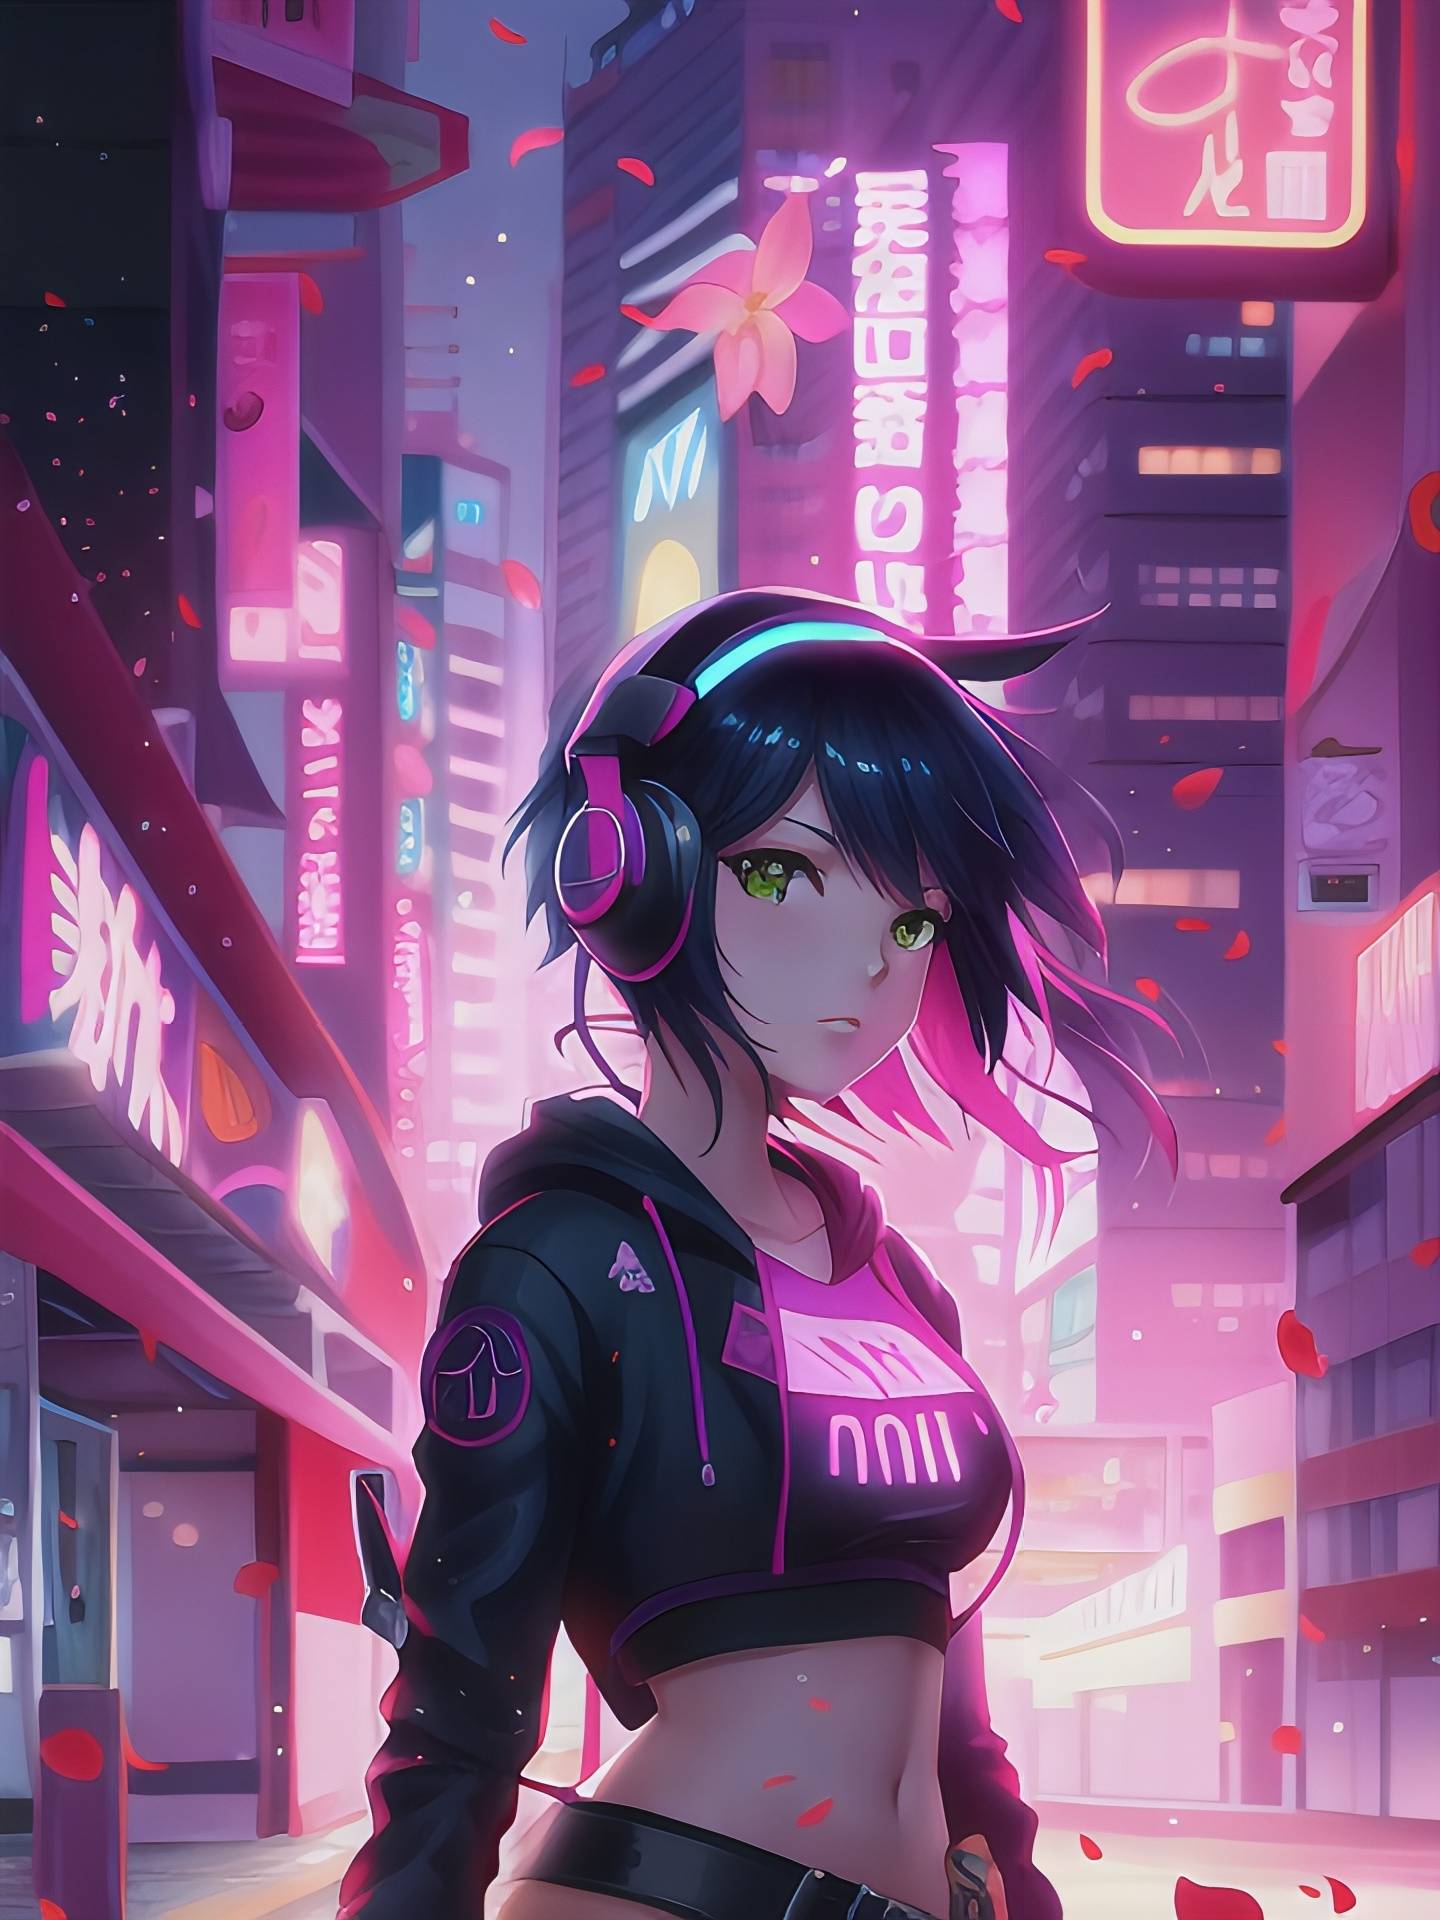 Cyberpunk girl by krzychumen on DeviantArt